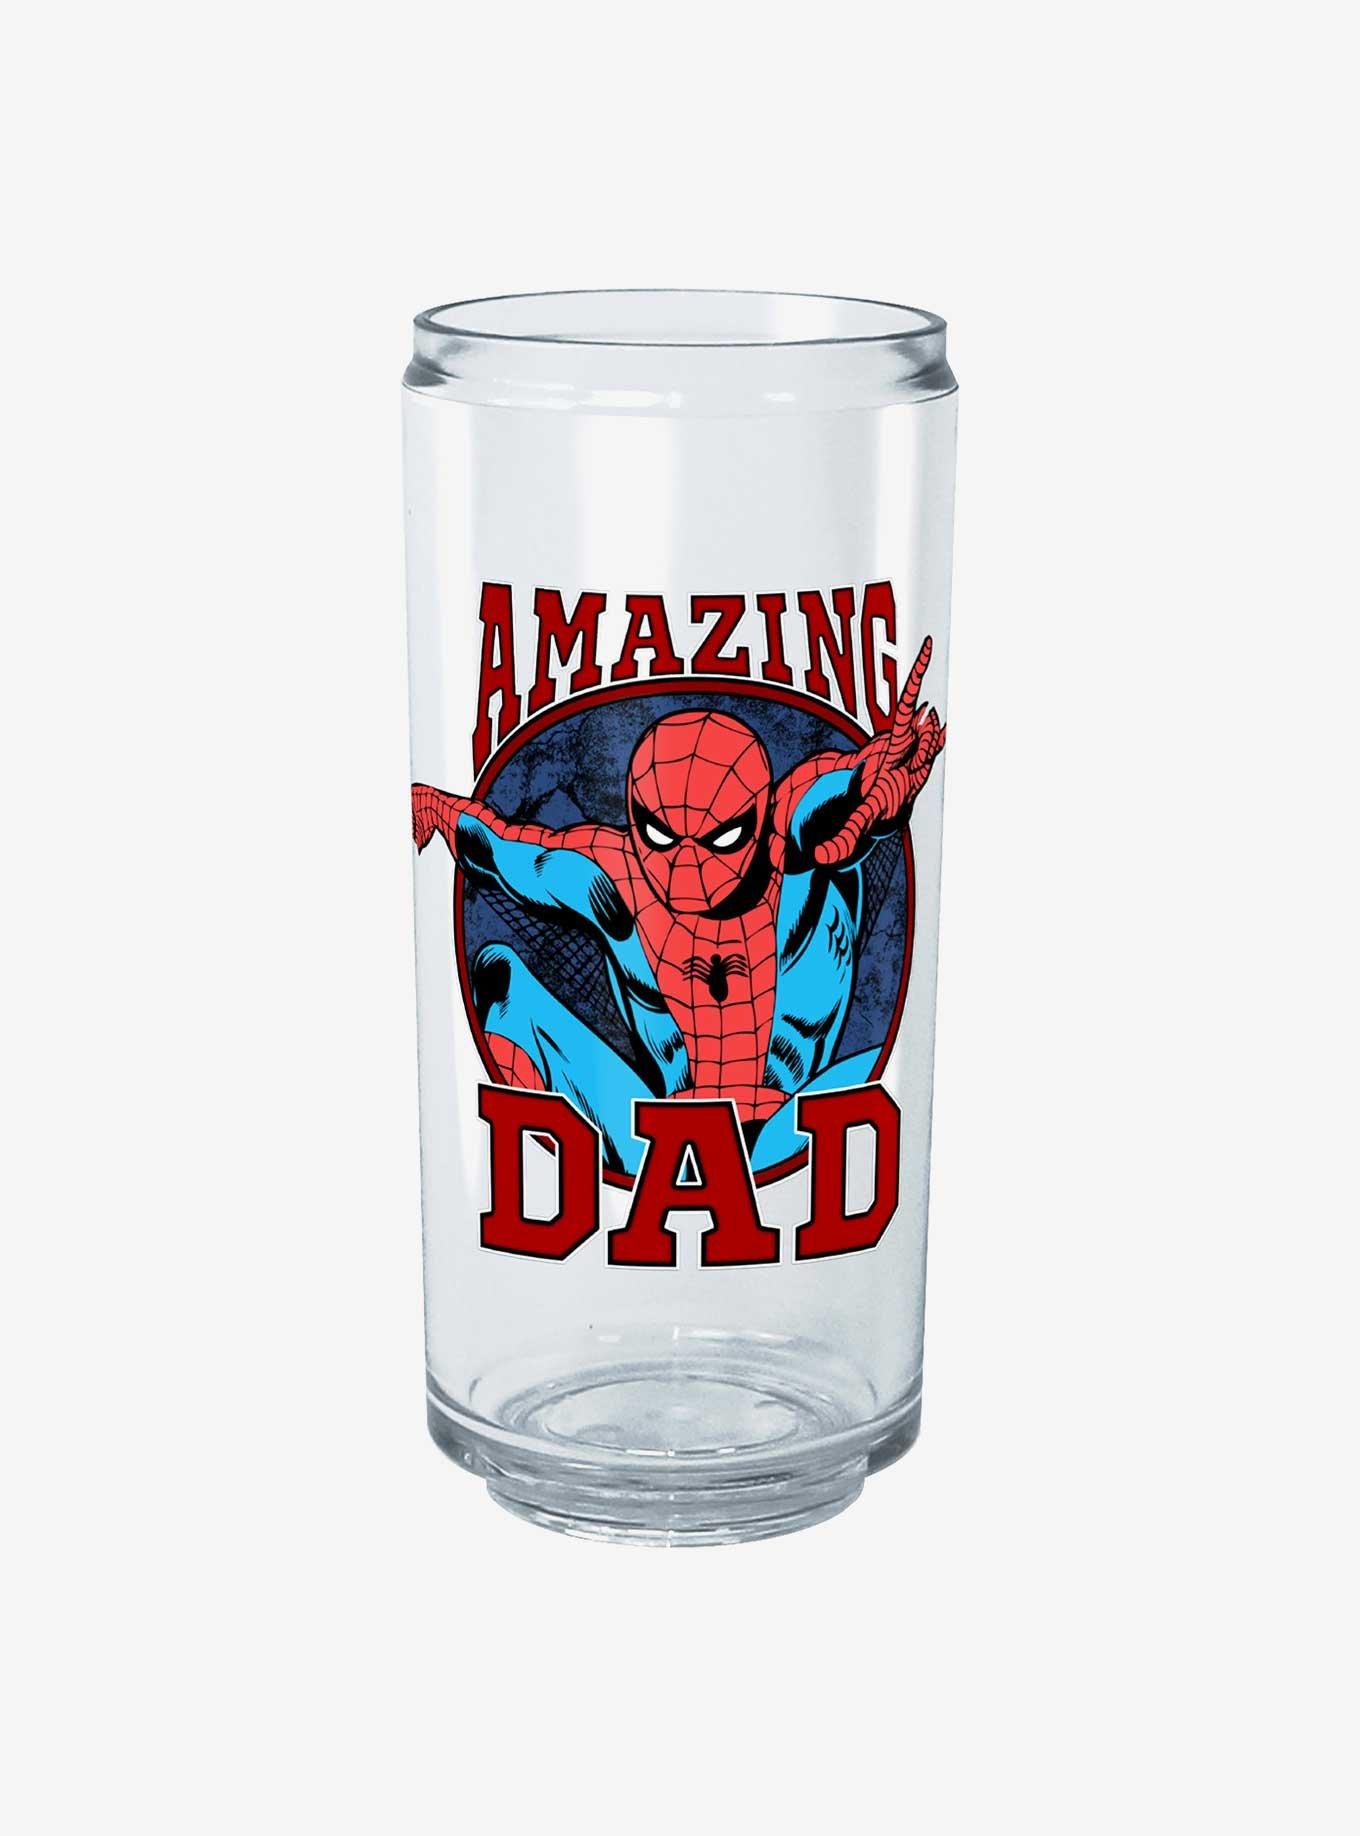 Star Wars Yoda Best Dad Ever Tritan Drinking Cup - Clear - 24 oz.